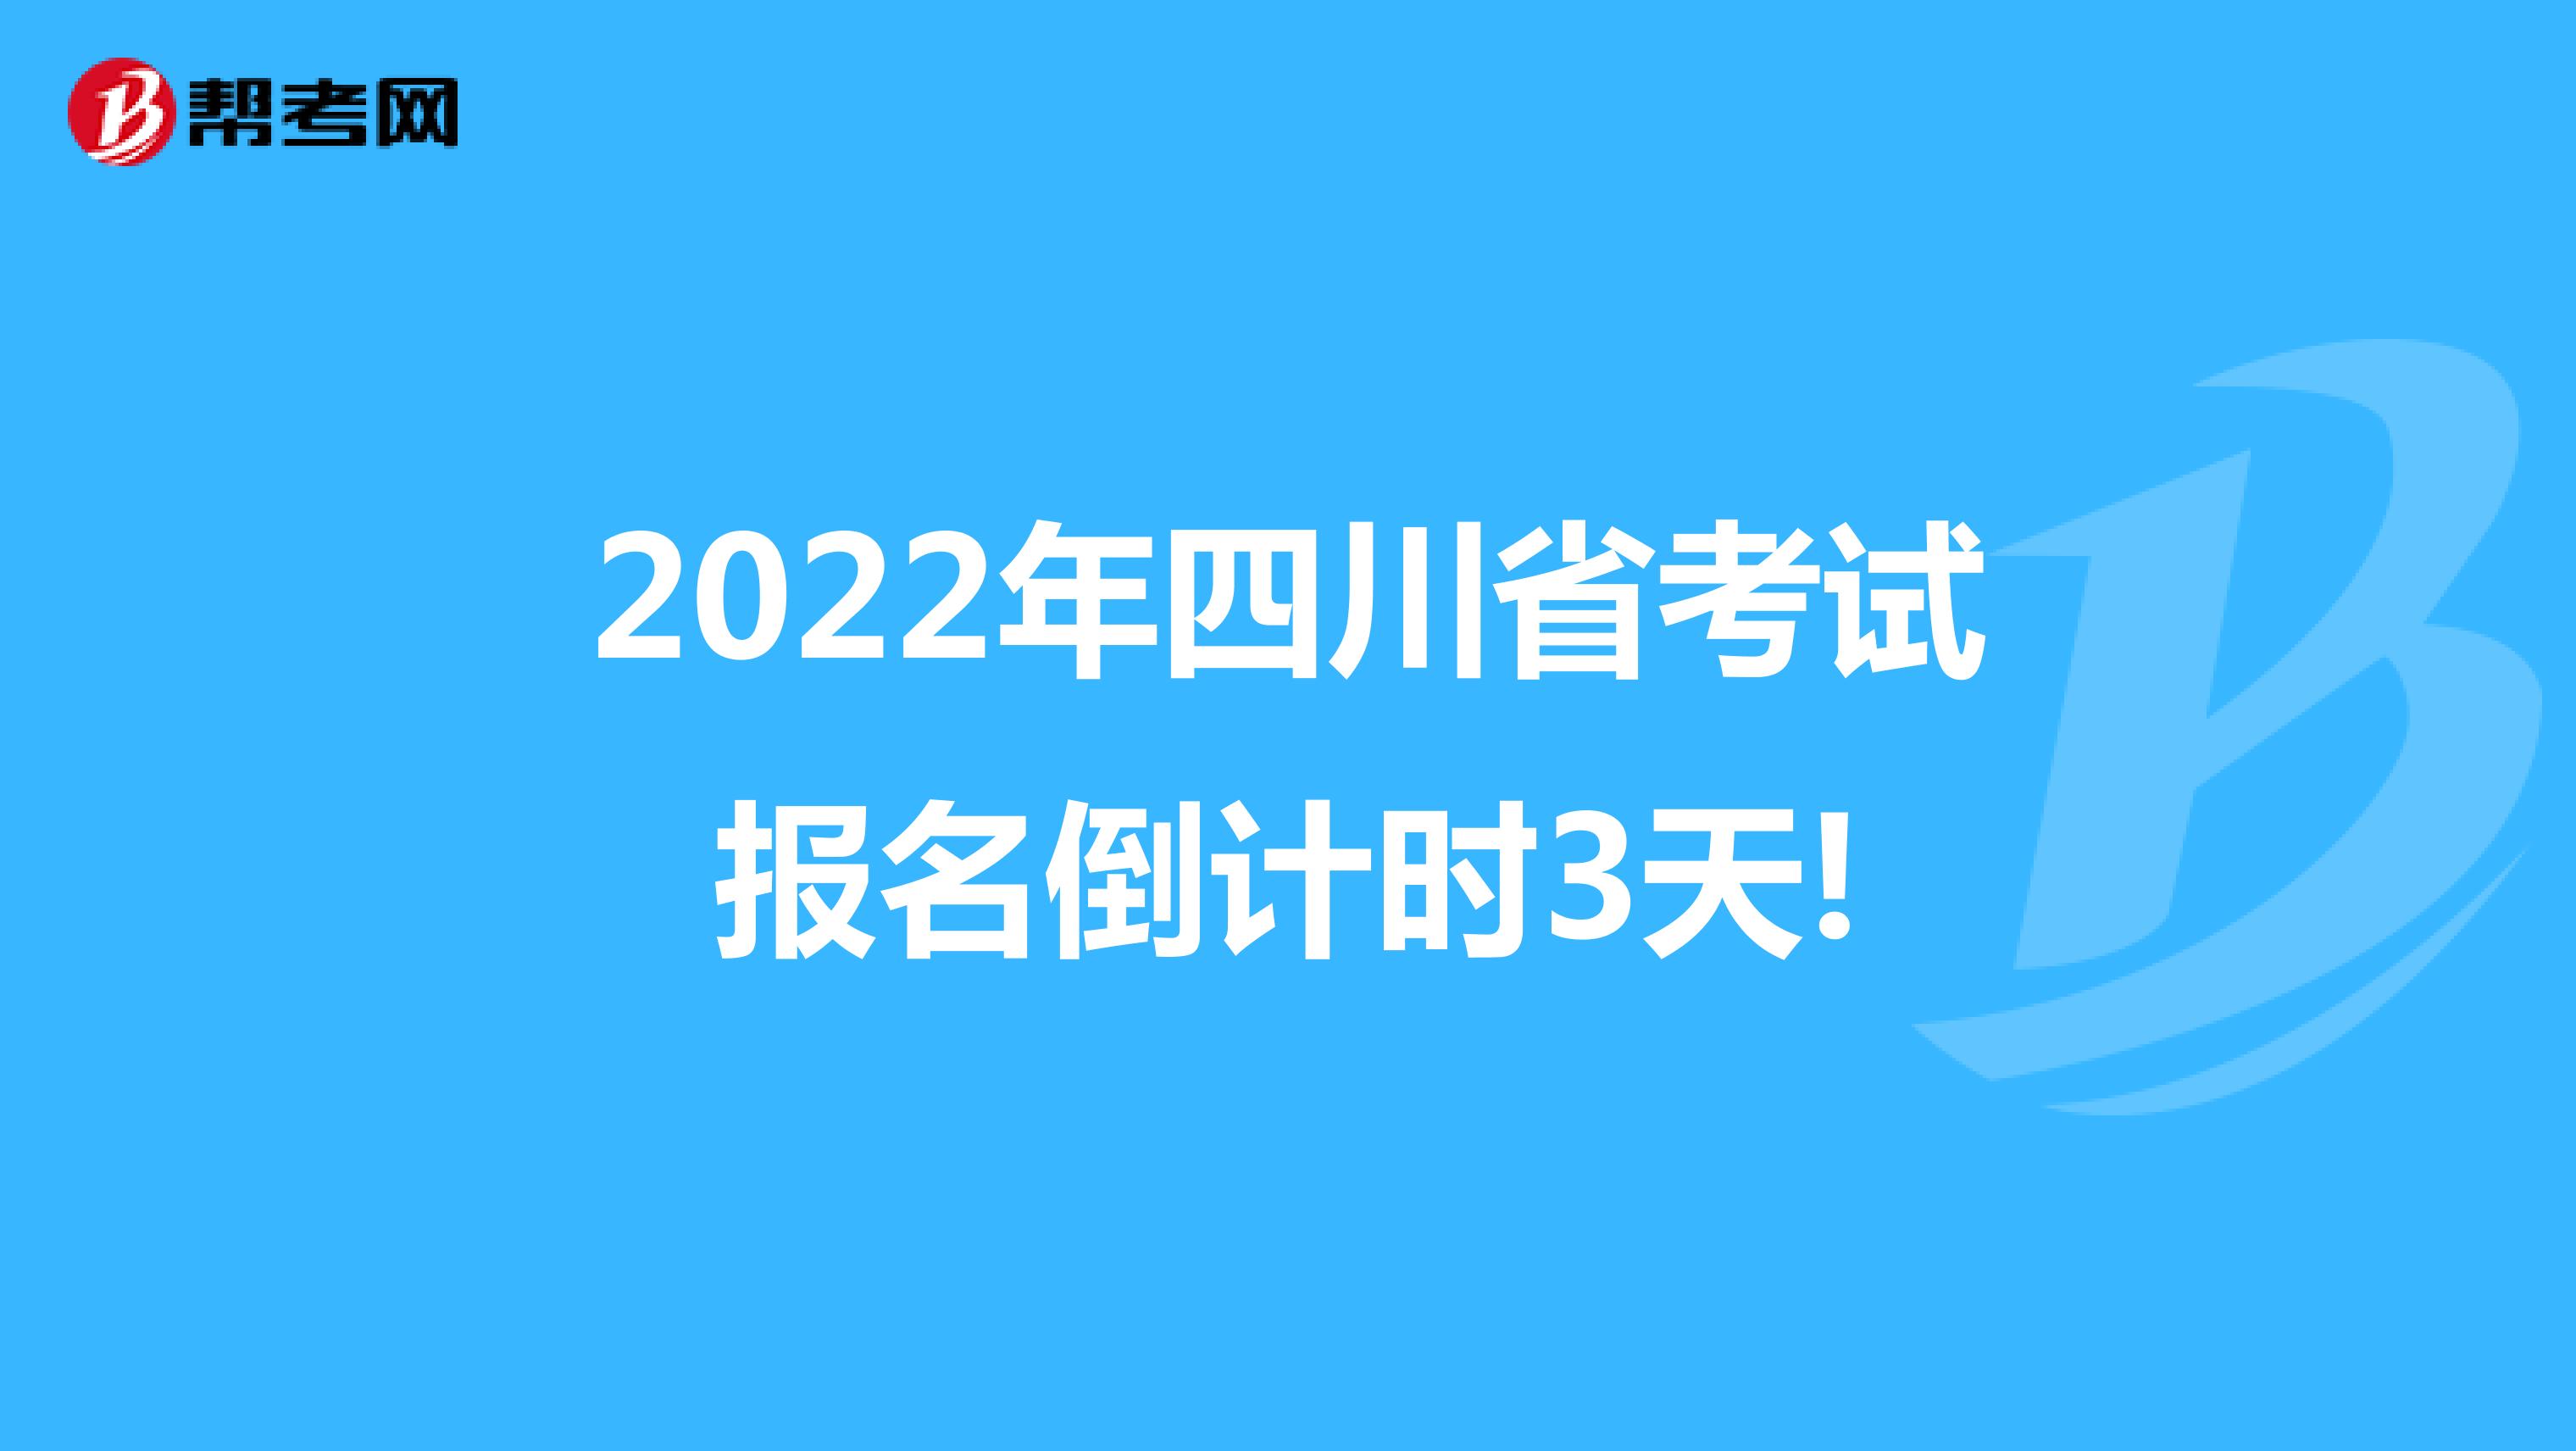 2022年四川省考试报名倒计时3天!